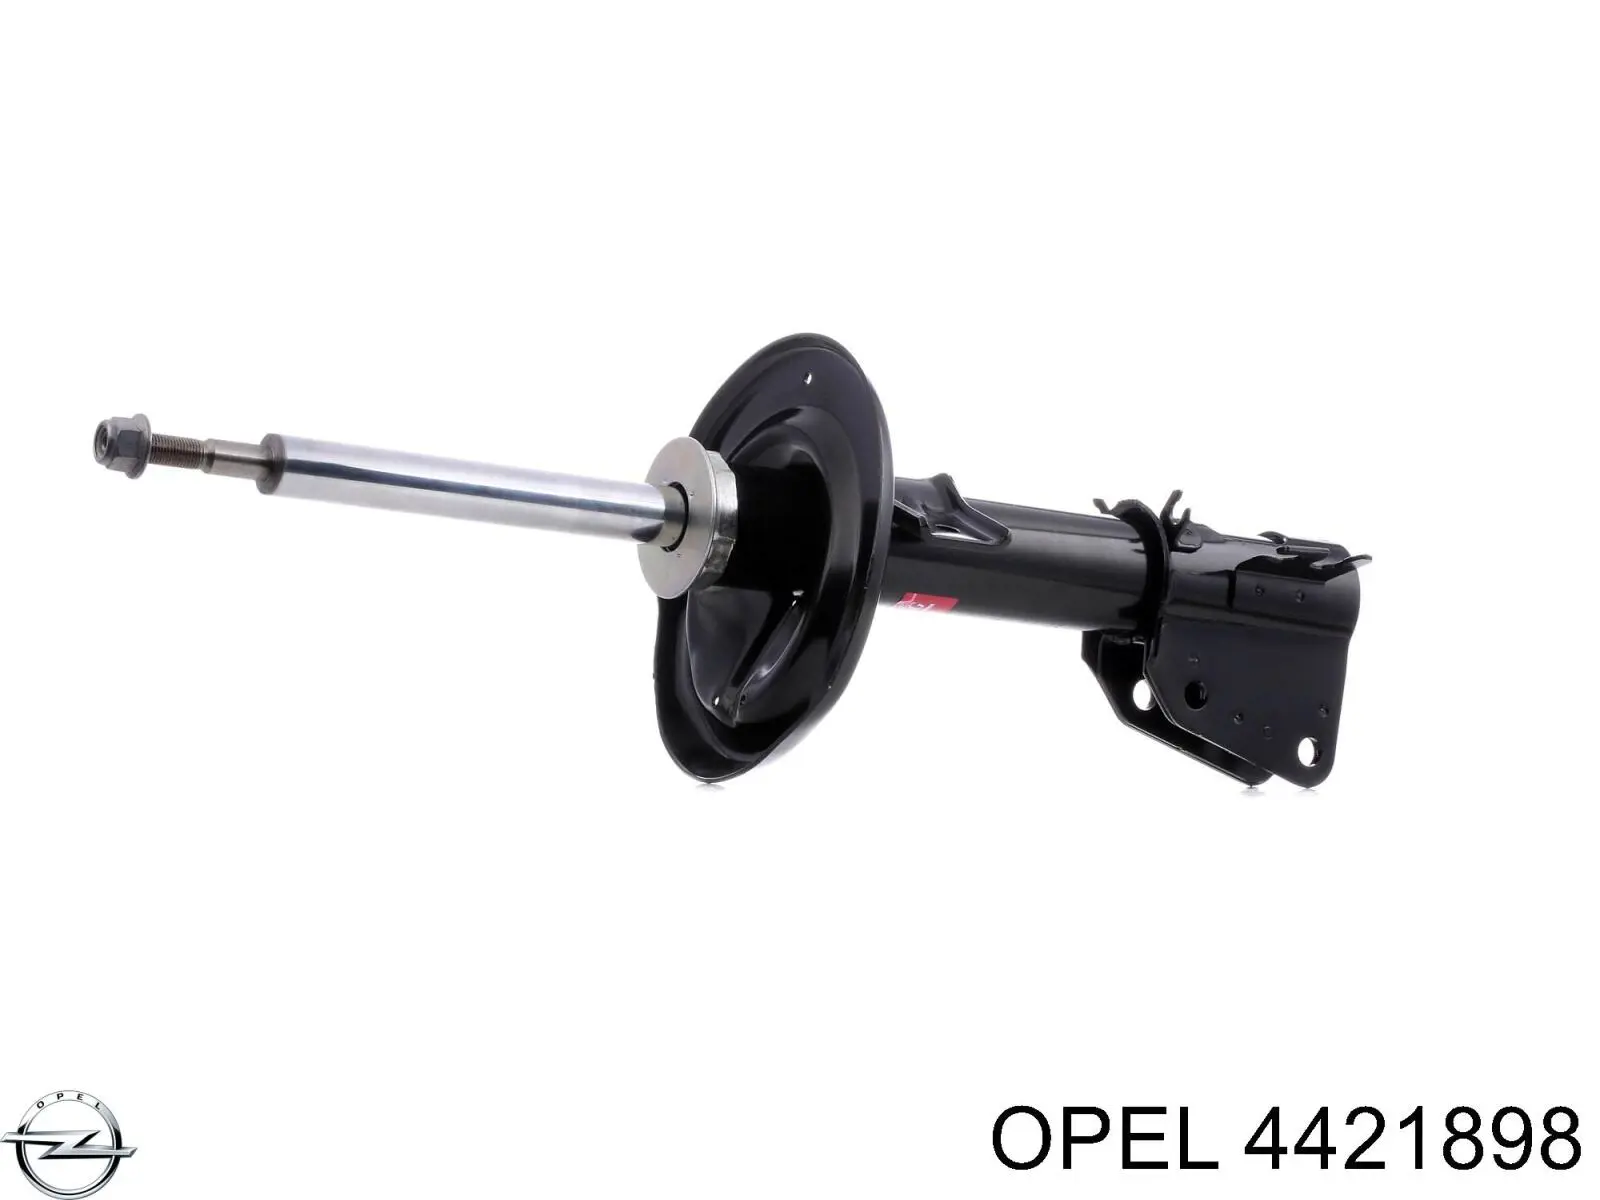 4421898 Opel амортизатор передний